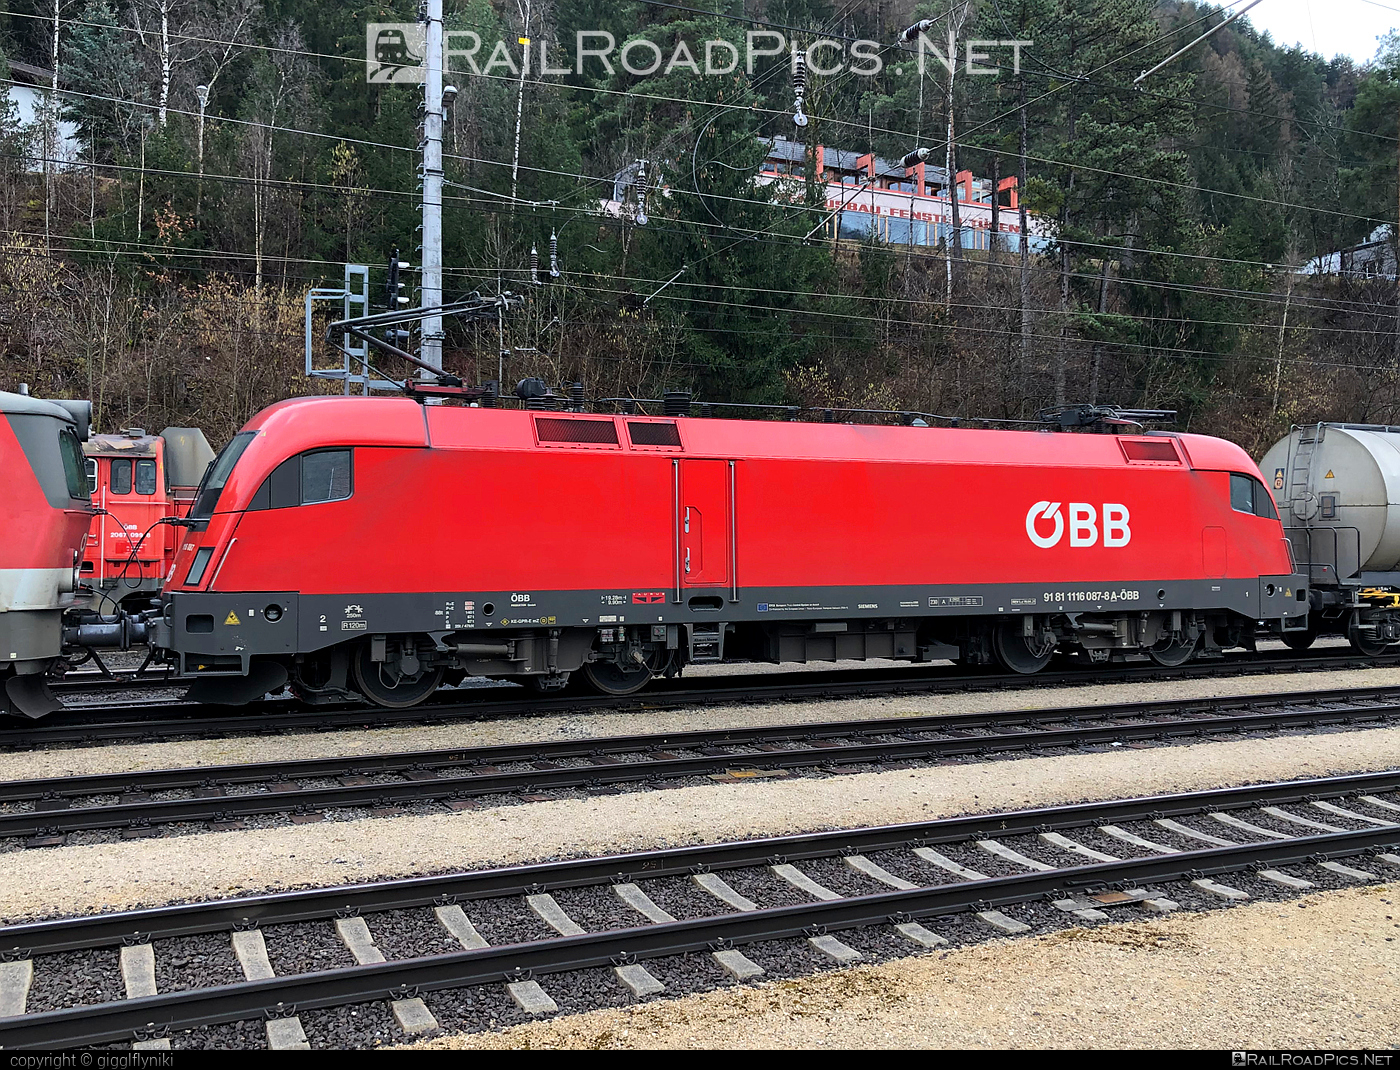 Siemens ES 64 U2 - 1116 087 operated by Rail Cargo Austria AG #es64 #es64u2 #eurosprinter #obb #osterreichischebundesbahnen #rcw #siemens #siemensEs64 #siemensEs64u2 #siemenstaurus #taurus #tauruslocomotive